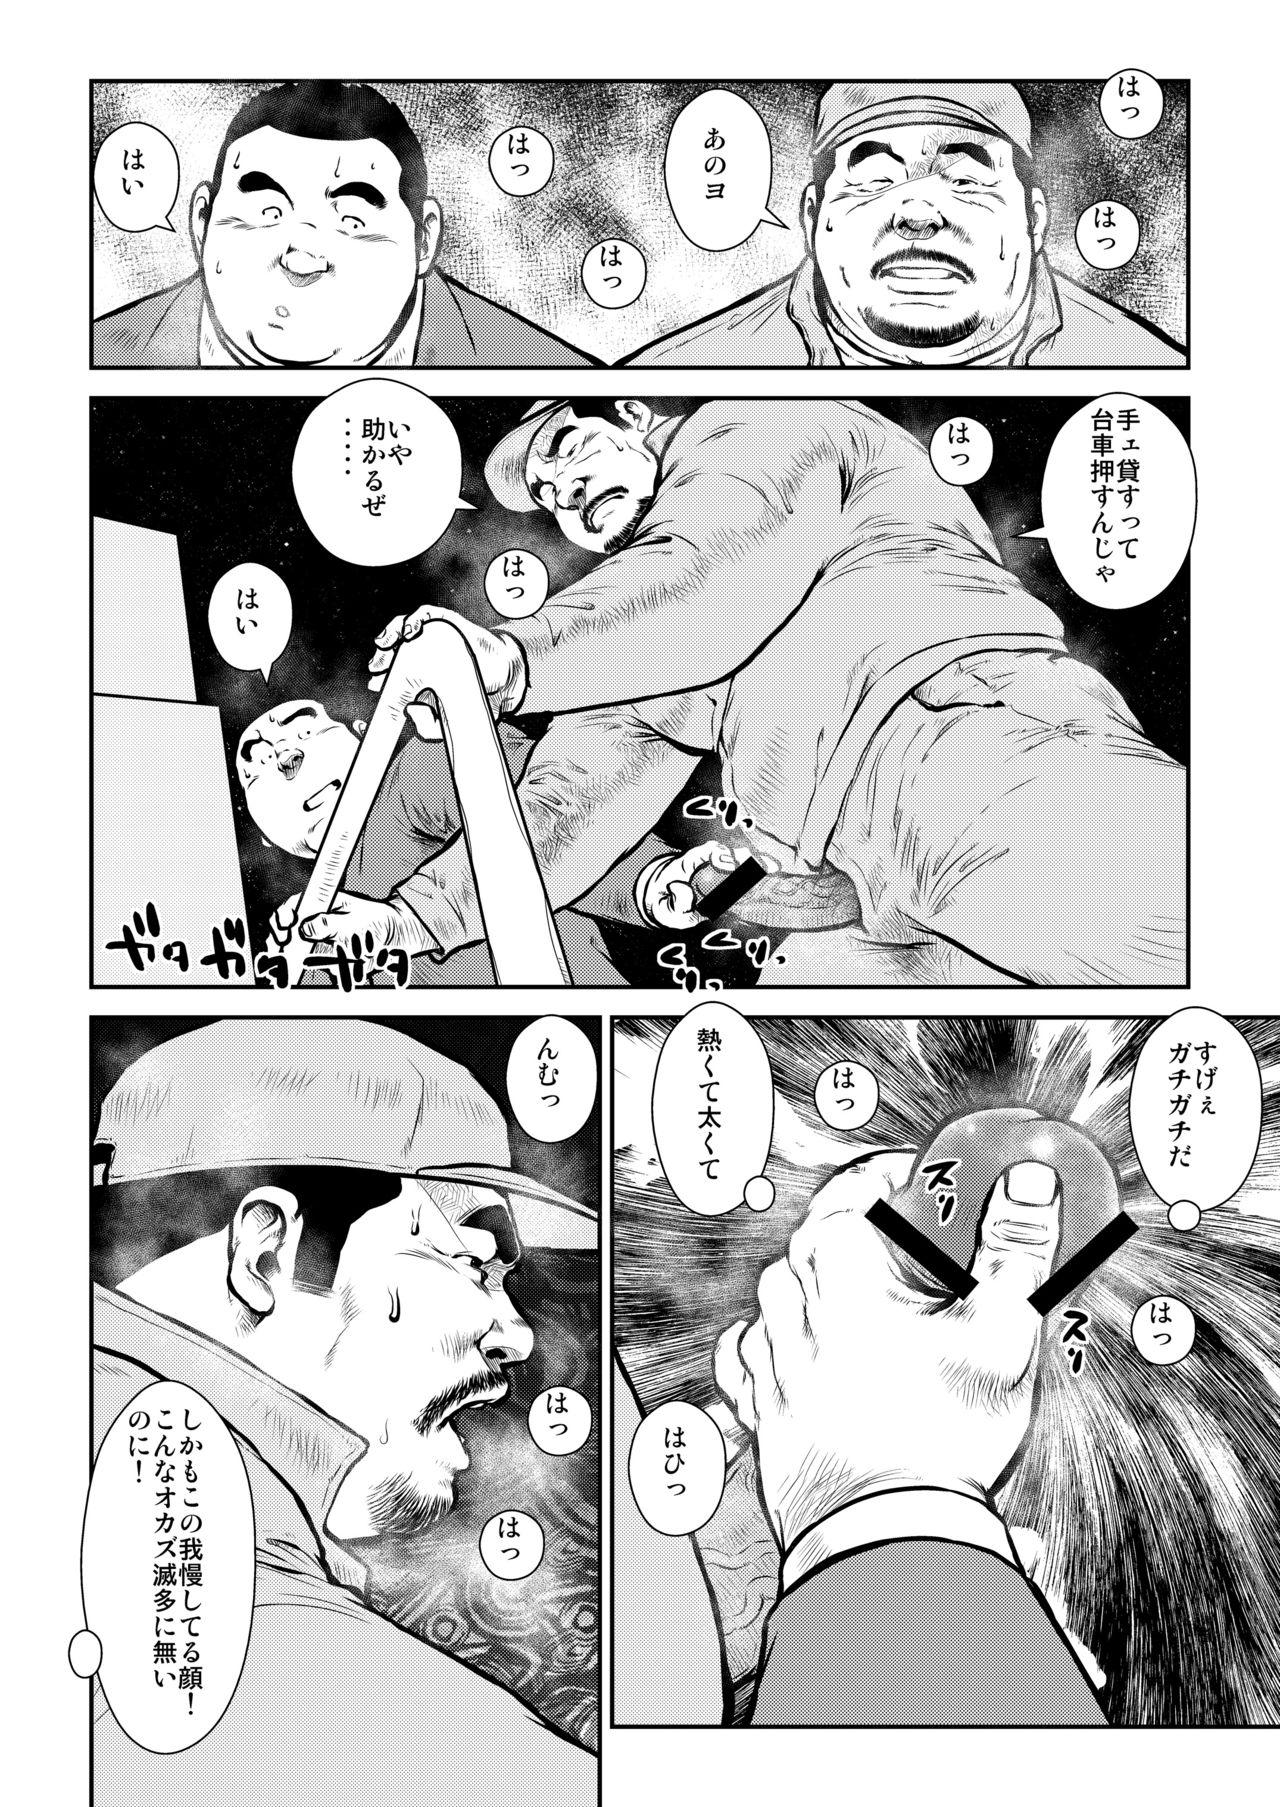 Moan Honjitsu wa G Day - Original Studs - Page 8